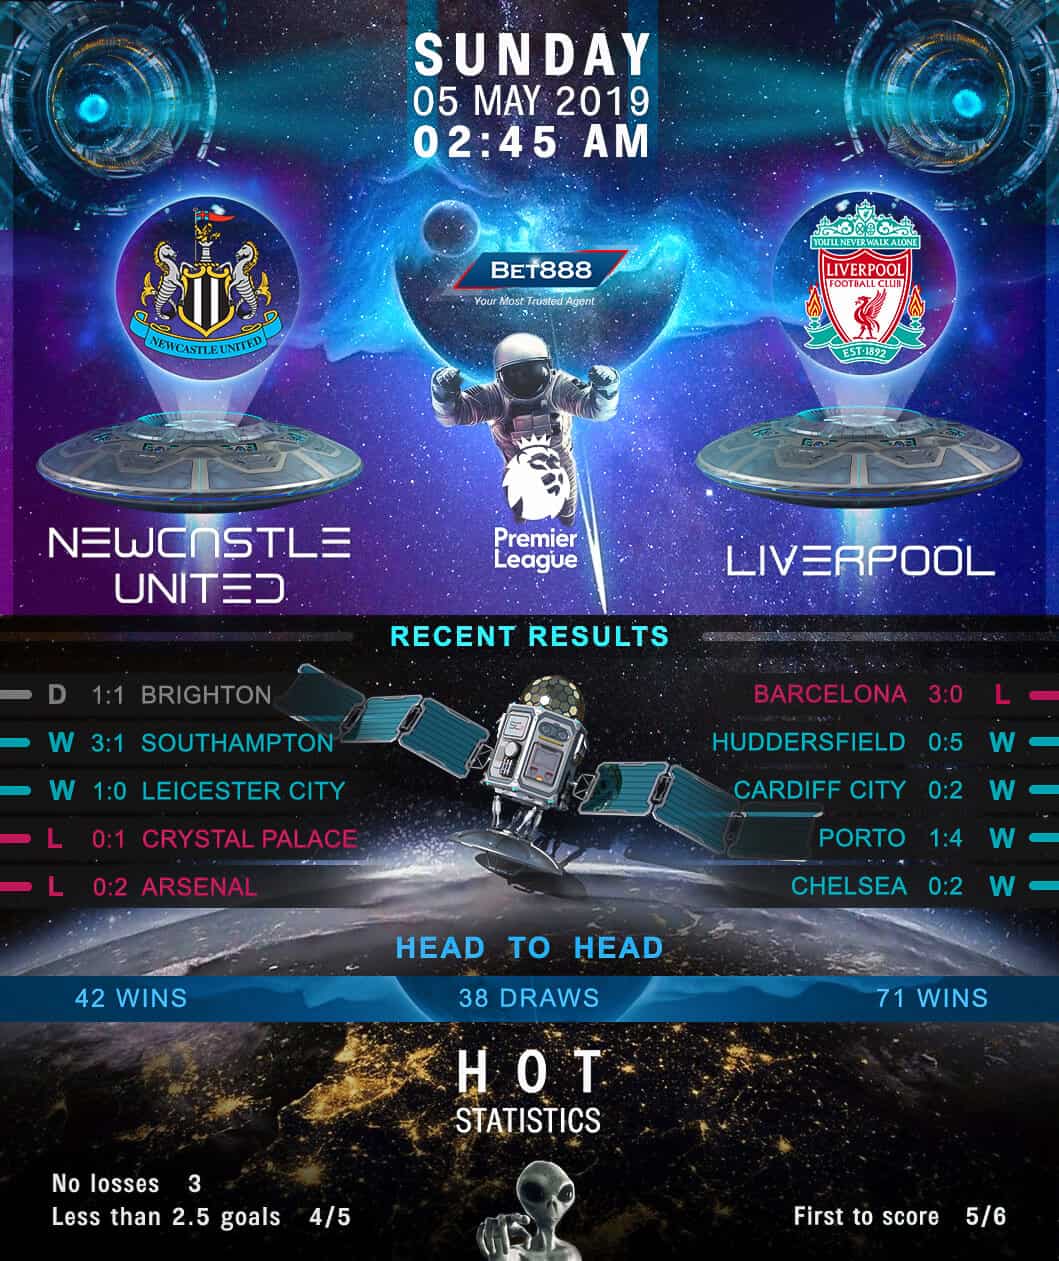 Newcastle United vs Liverpool 05/05/19